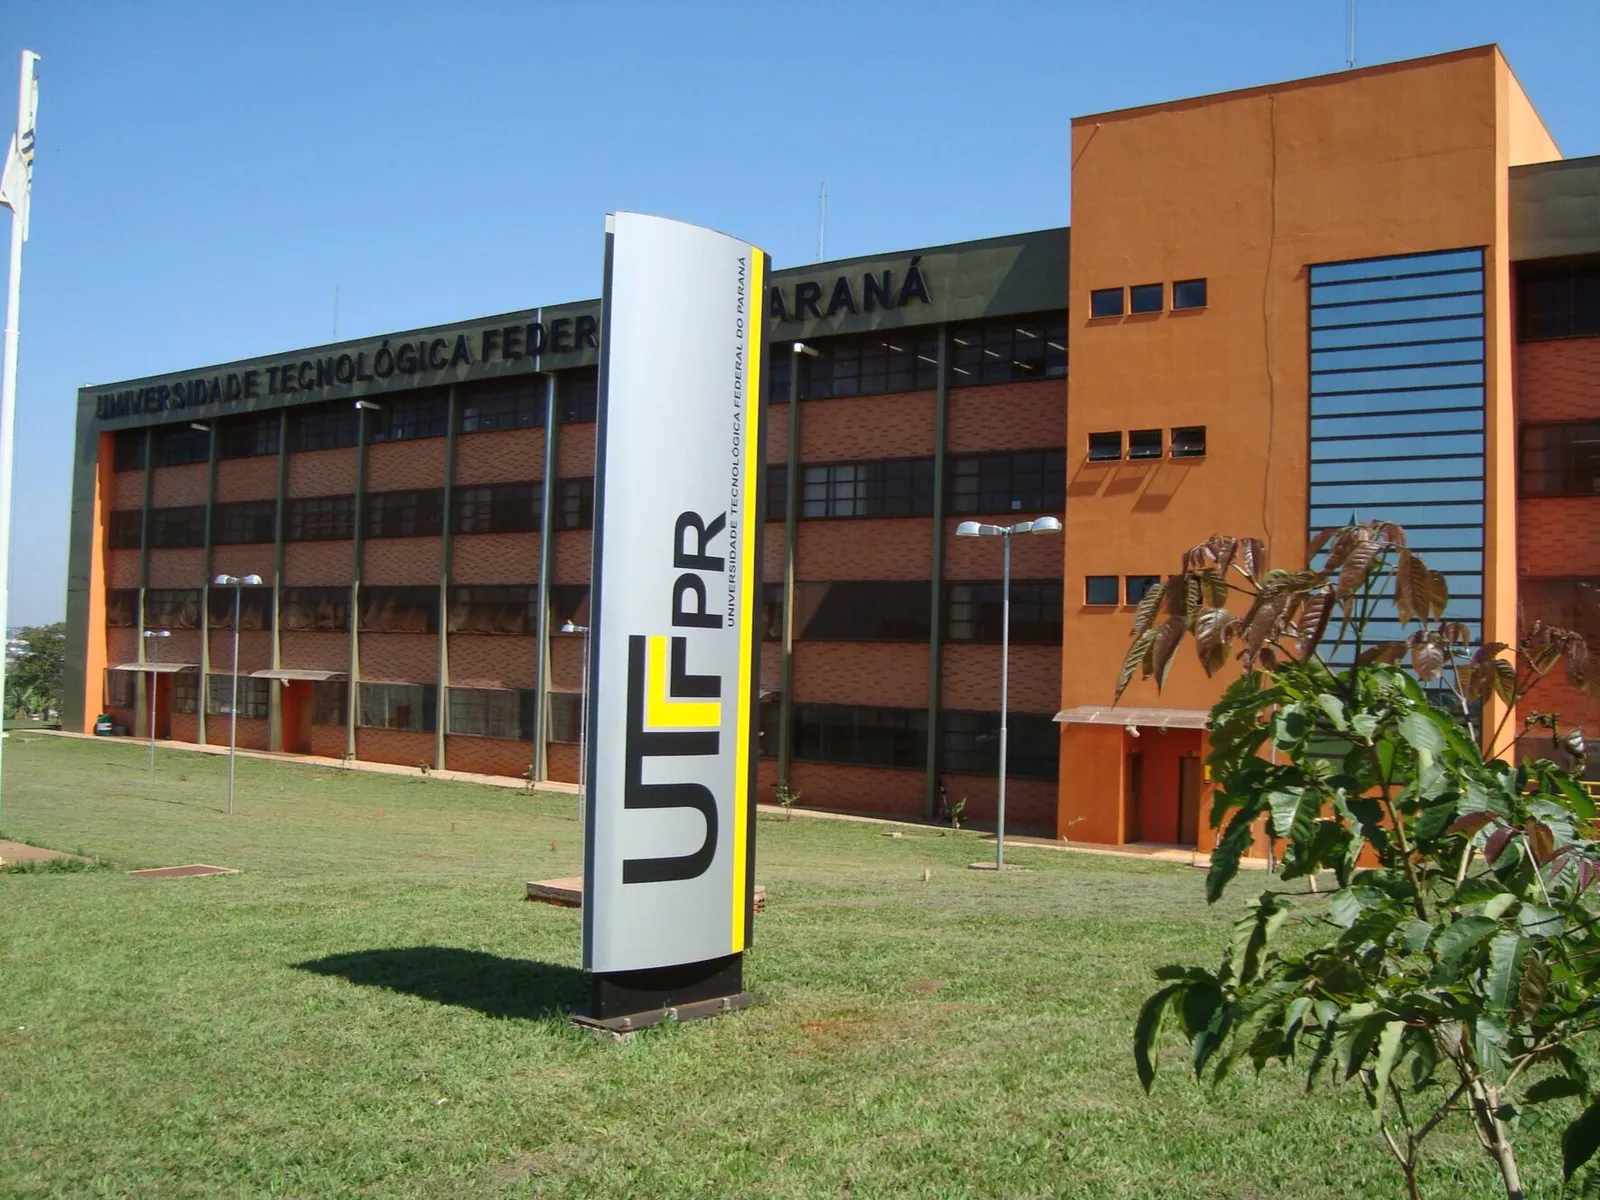 Imagem ilustrativa da imagem Após 15 anos, UTFPR reforça sonhos da Londrina 2.0